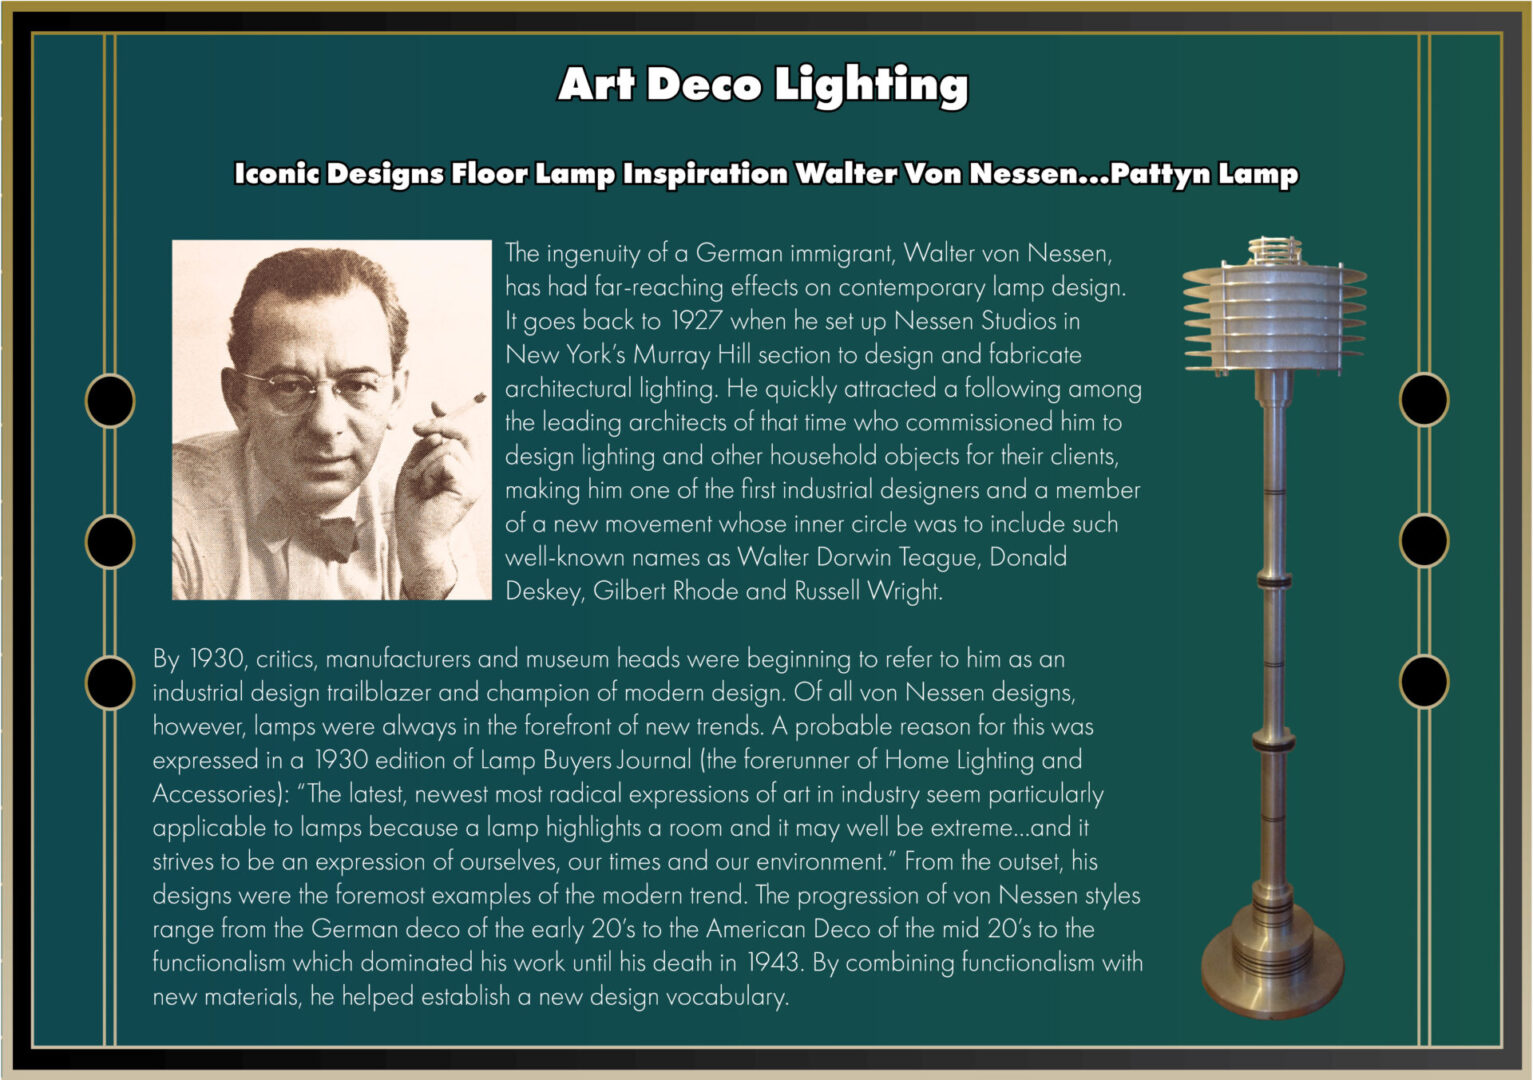 Pattyn Lamp designed by Walter Von Nessen